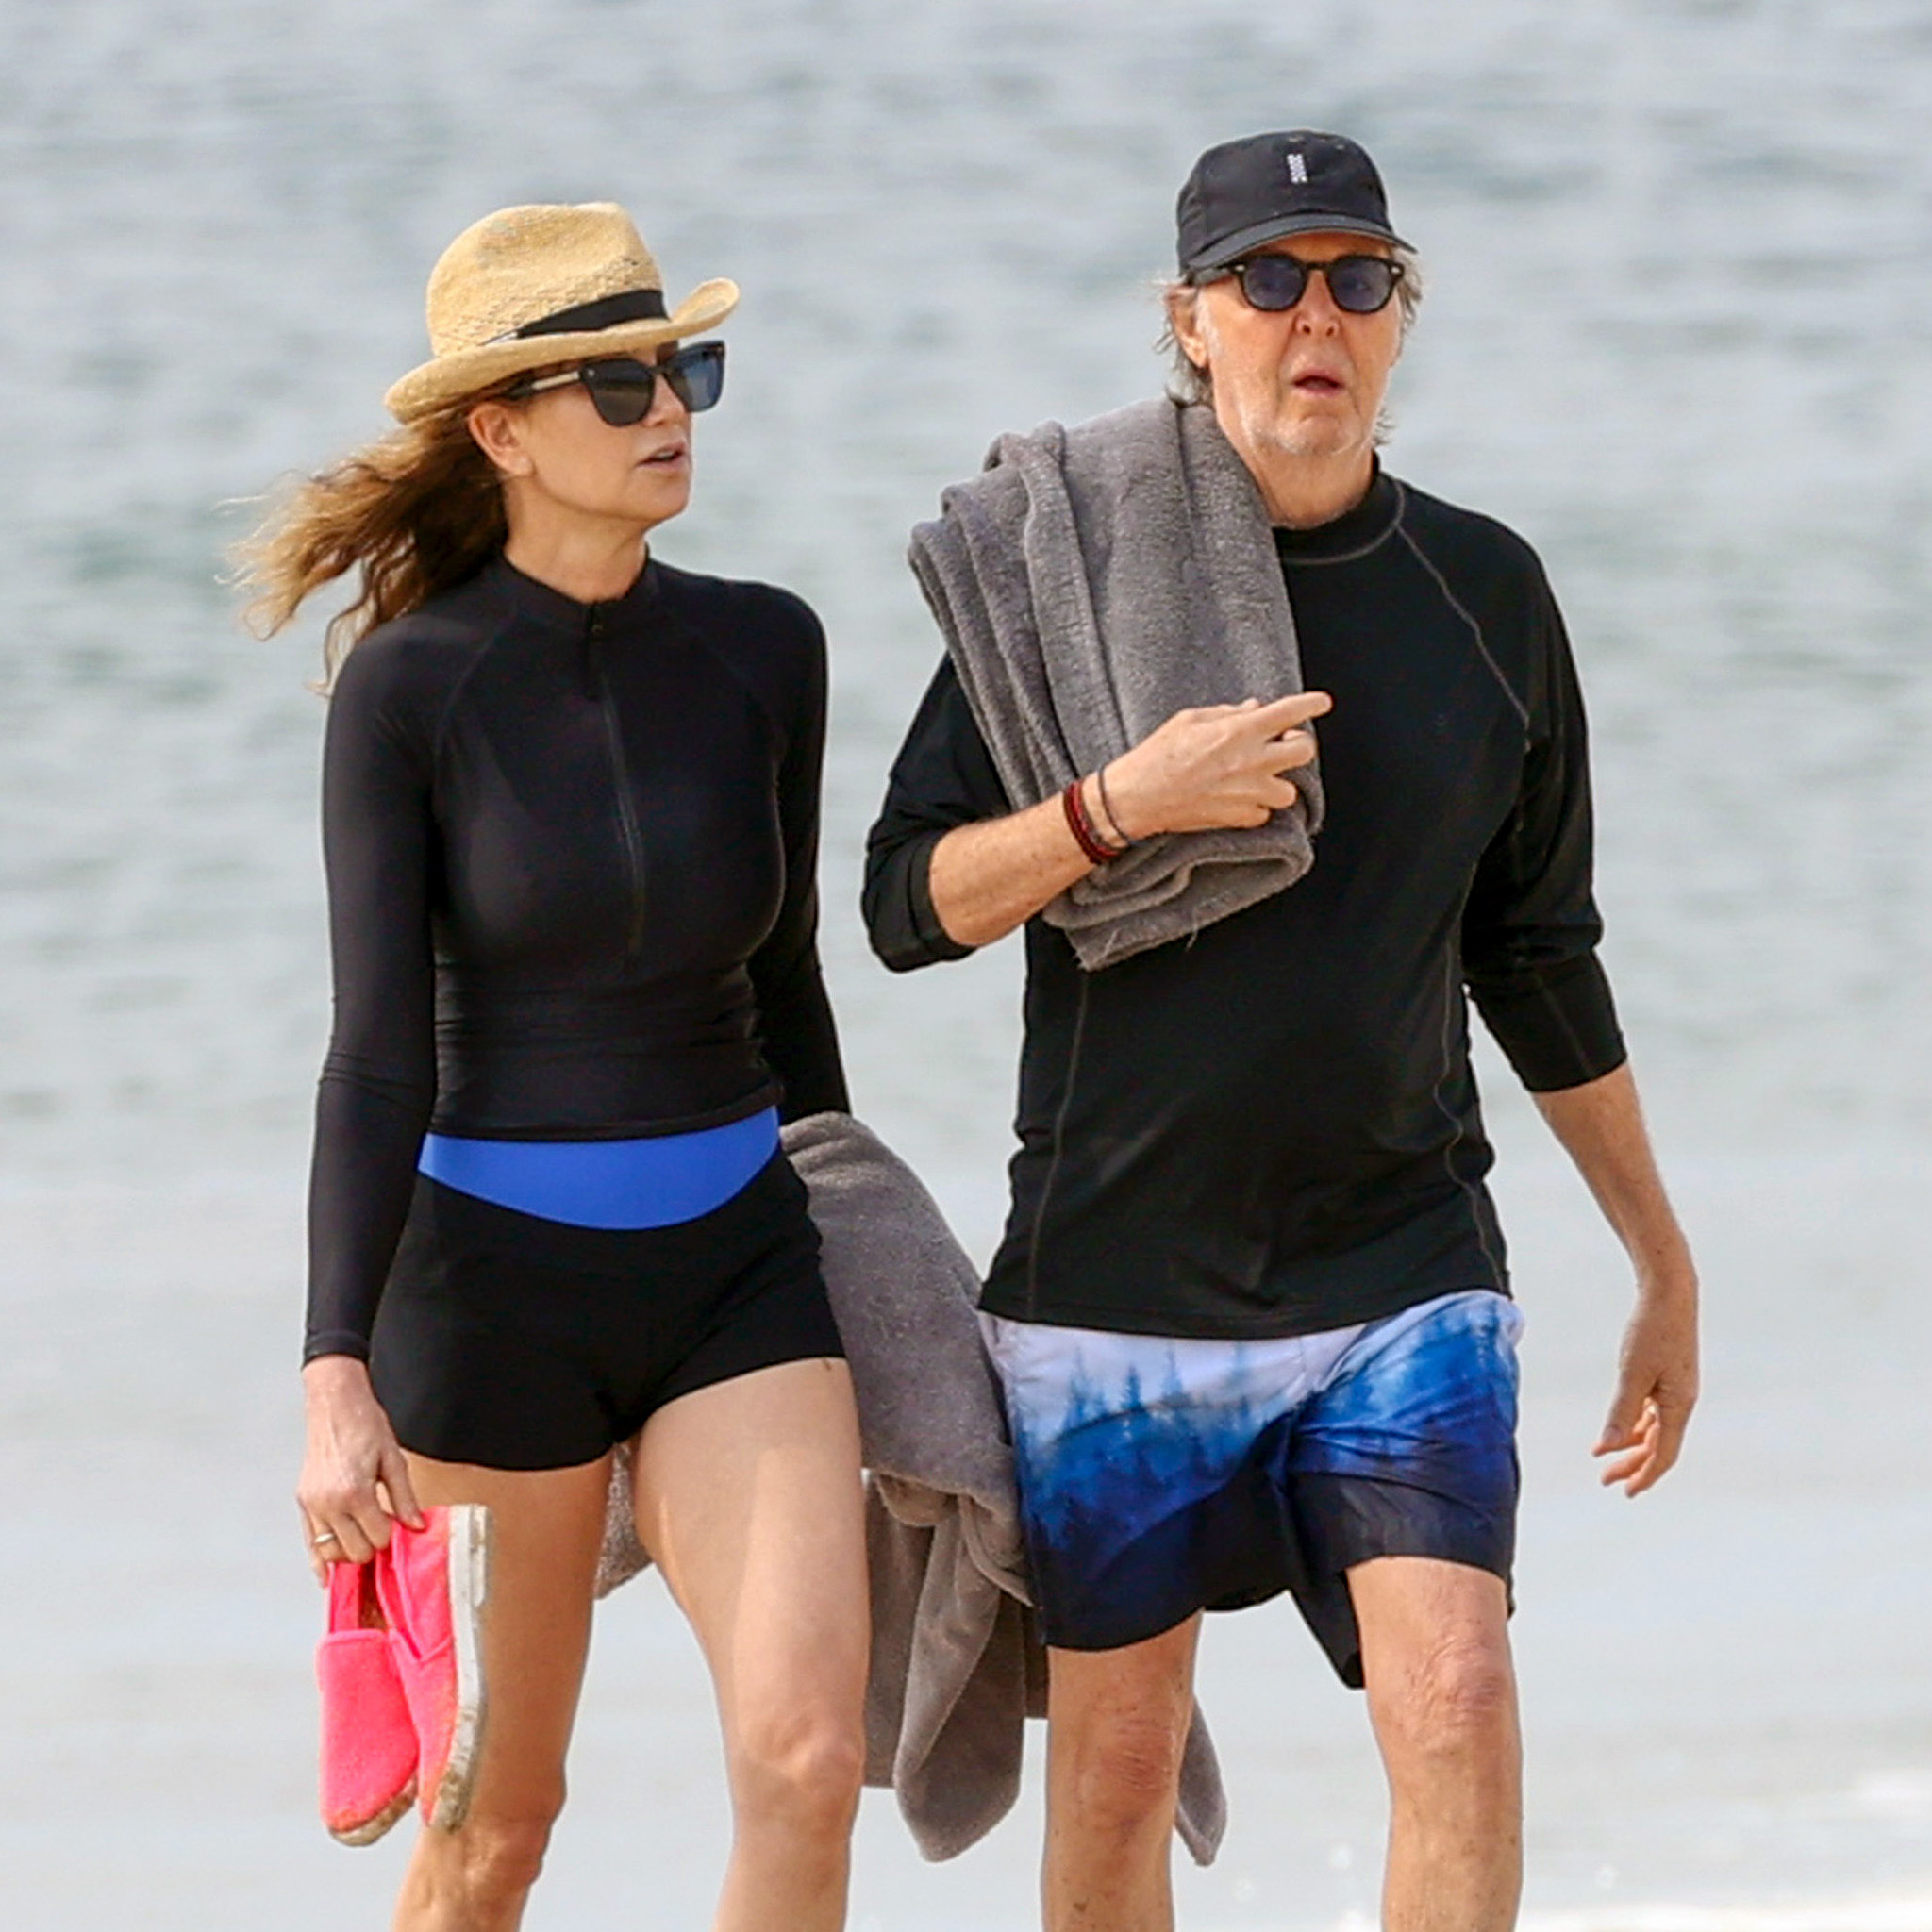 Día de playa y entrenamiento. Paul McCartney y su esposa, Nancy Shevell, disfrutaron de una rutina distinta en The Hamptons. Utilizaron sus trajes de neoprene para meterse al mar y también corrieron por la orilla